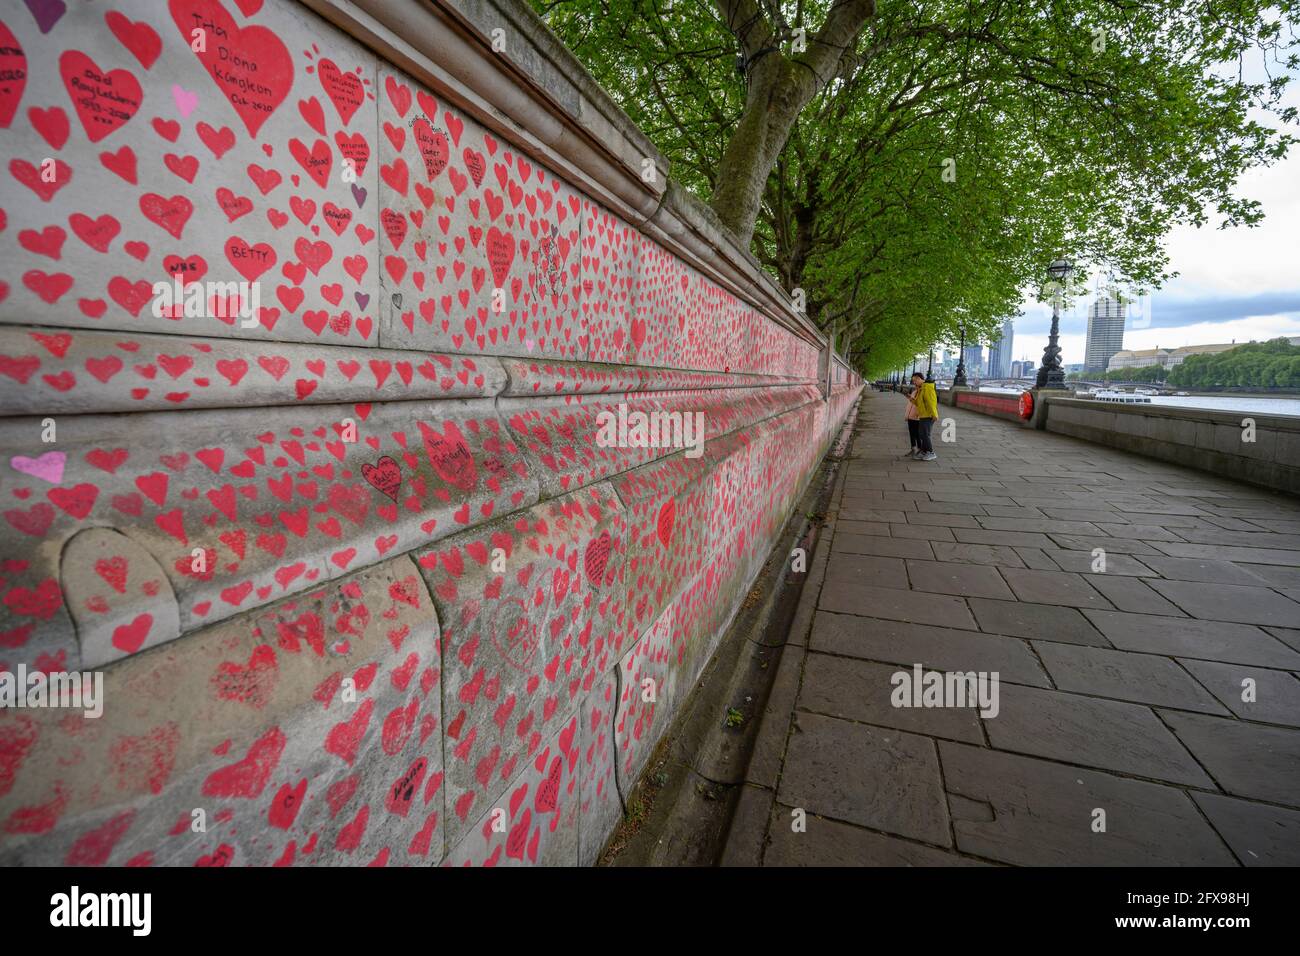 26 Mai 2021. Die National Covid Memorial Wall am Südufer der Rover Thames, gegenüber dem Houses of Parliament, erinnert an diejenigen, die ihr Leben an Covid-19 im Vereinigten Königreich verloren haben. Kredit: Malcolm Park/Alamy. Stockfoto